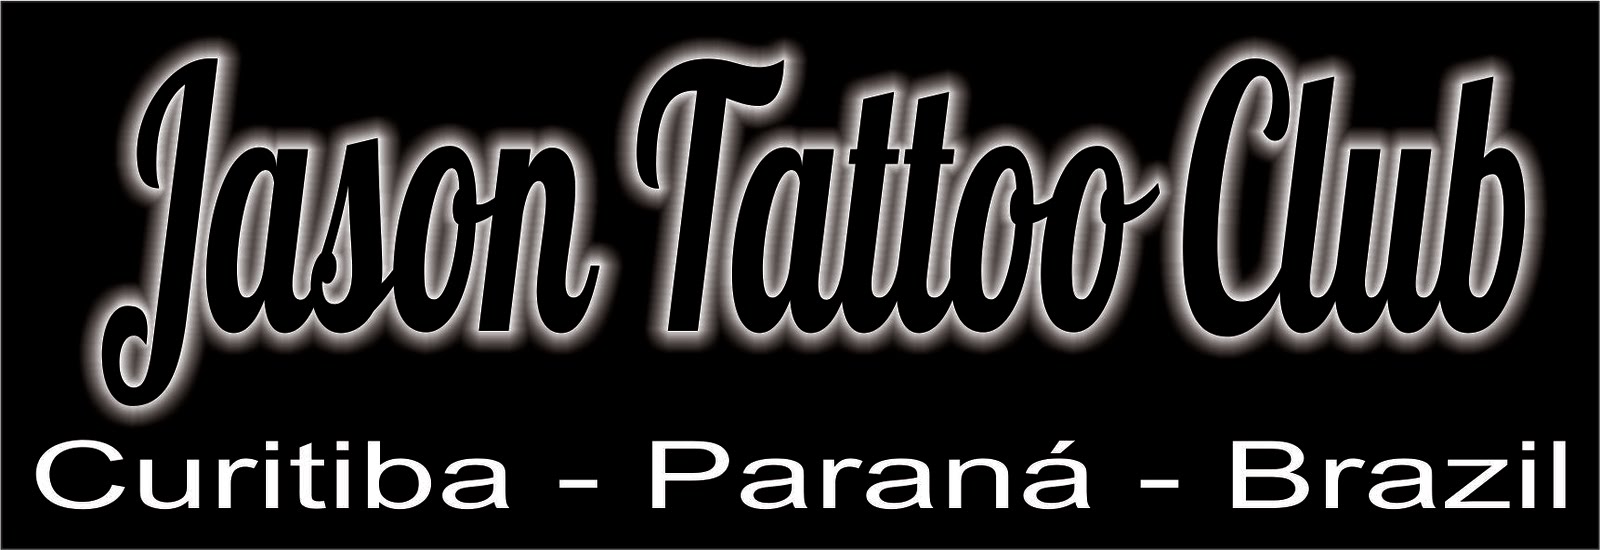 Jason Tattoo Club